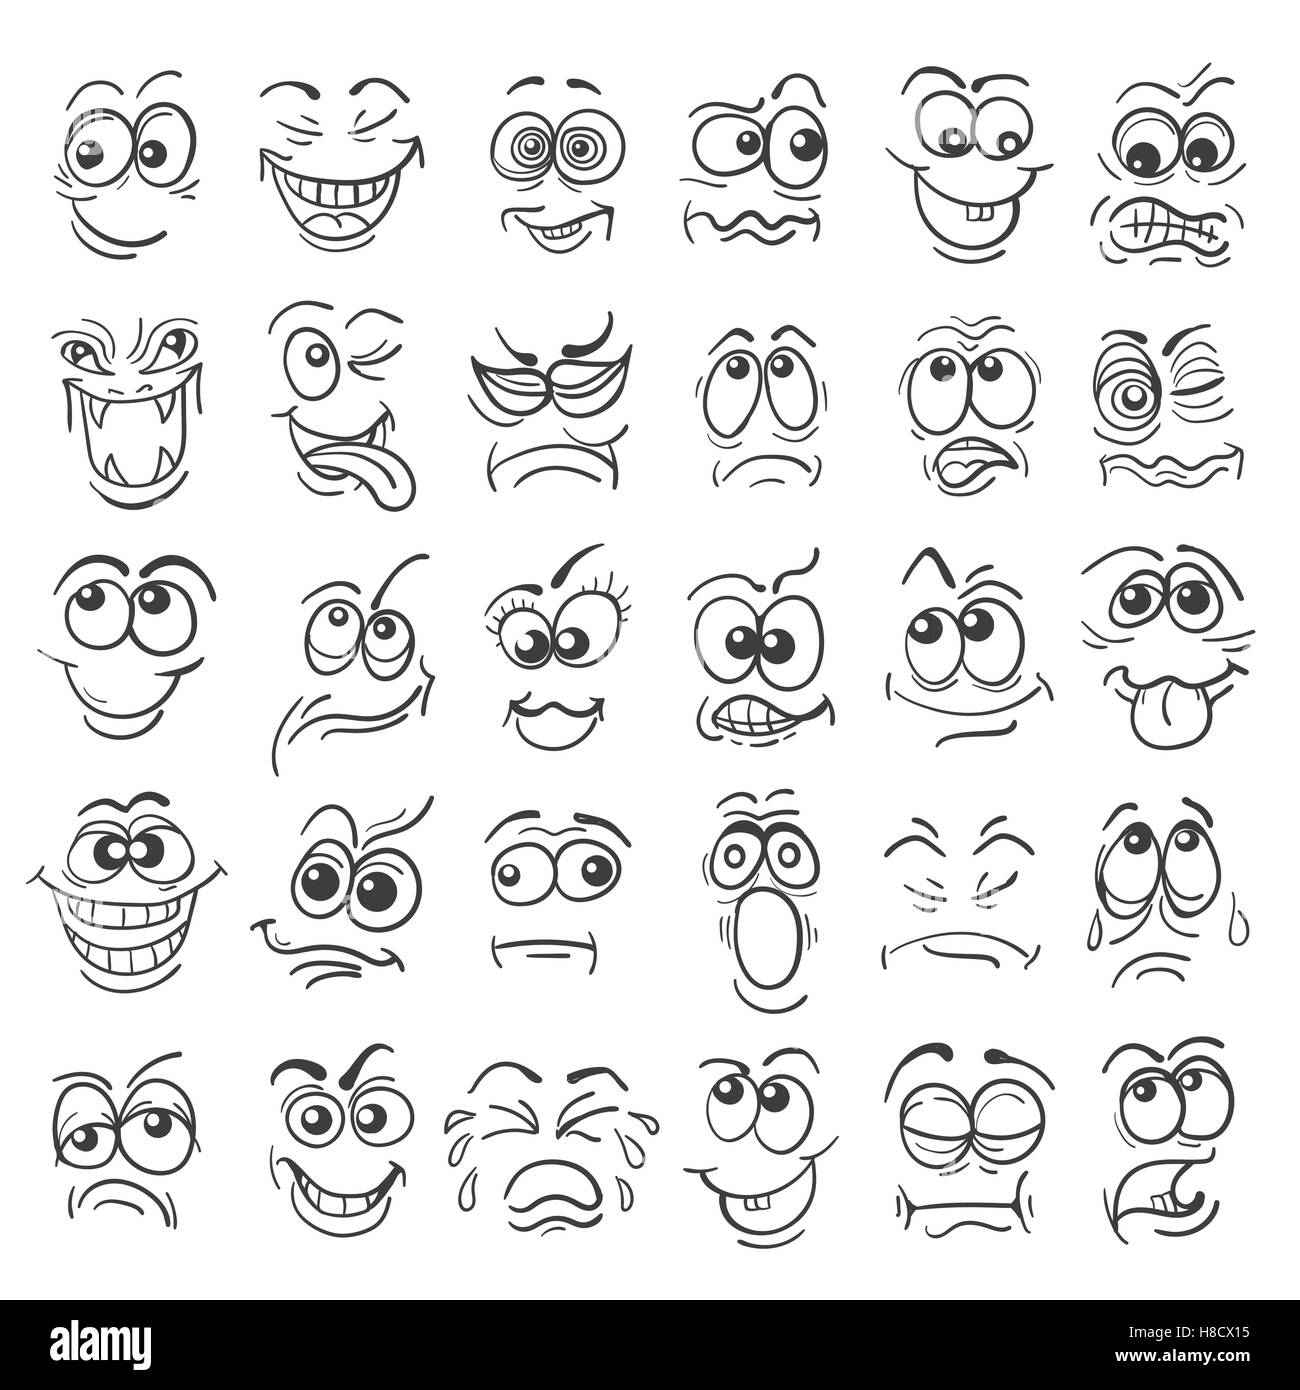 Comic-Gesicht Emotion Satz. Verschiedene Gesichtsausdrücke in Gekritzelart isoliert auf weiss. Vektor-Illustration. Stock Vektor